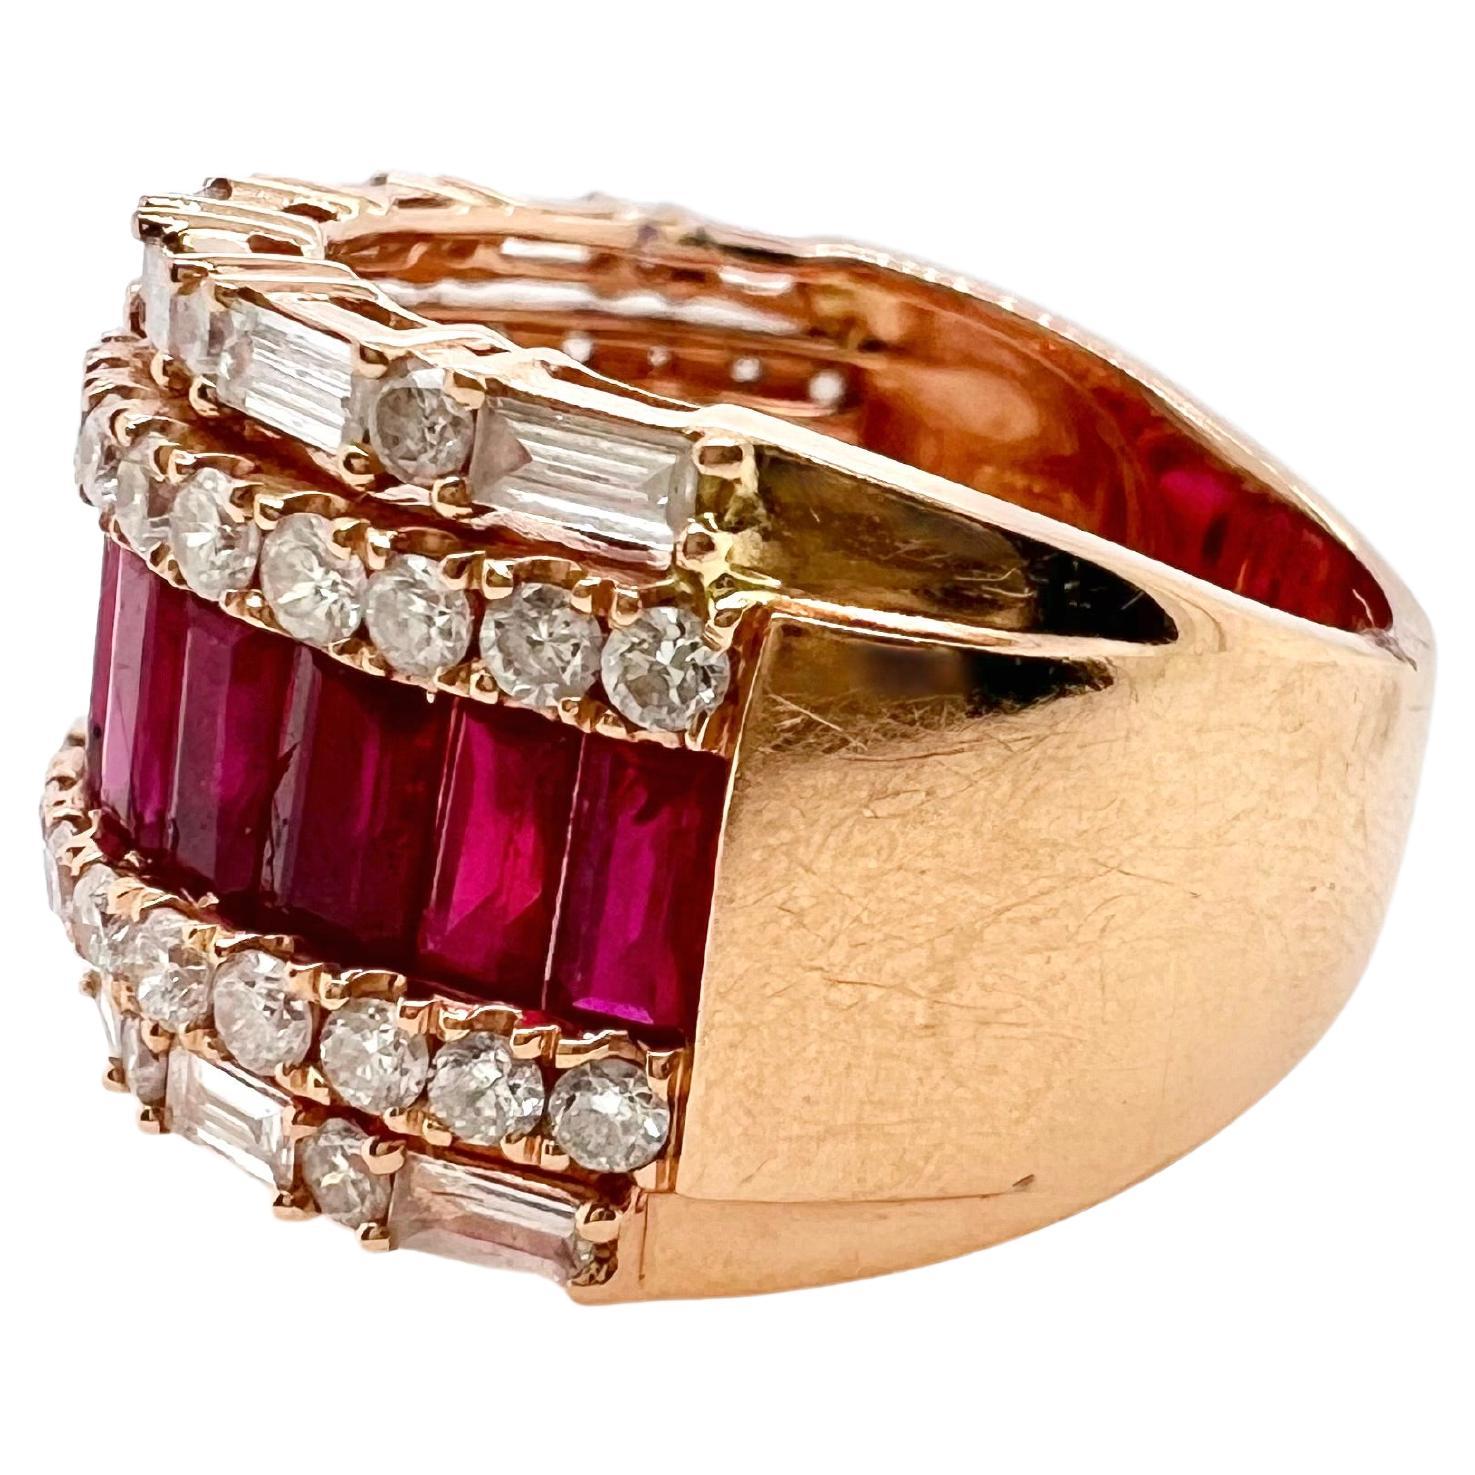 Il s'agit d'une bague exquise en rubis et diamants qui ira avec toutes les tenues.  C'est le bracelet décontracté parfait avec les baguettes de rubis serties au centre et les diamants ronds et baguettes sur les épaules.

Taille : 6.25 (peut être